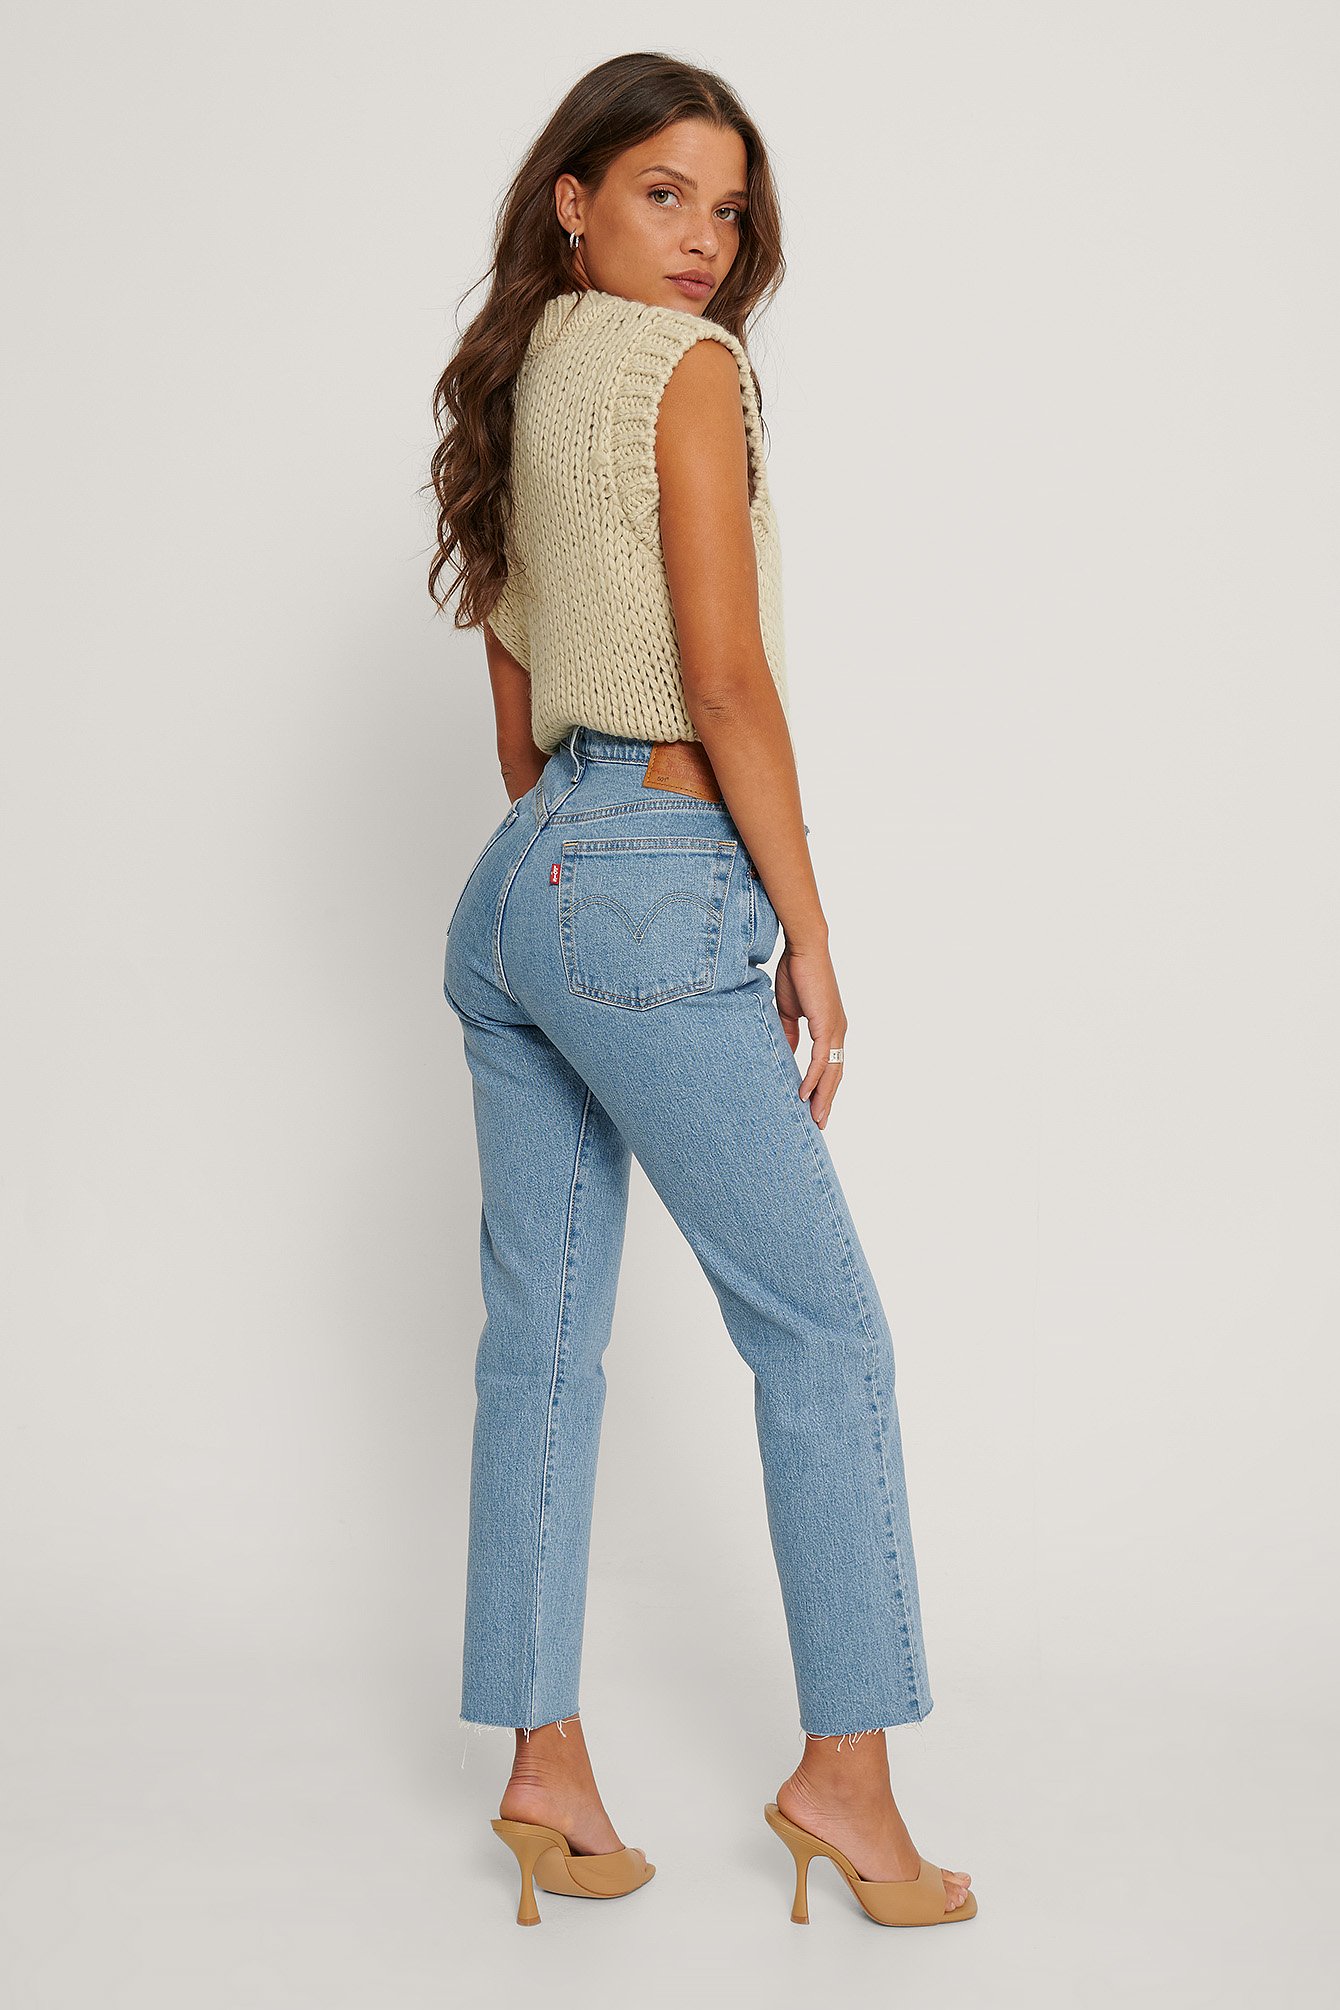 levis crop jeans